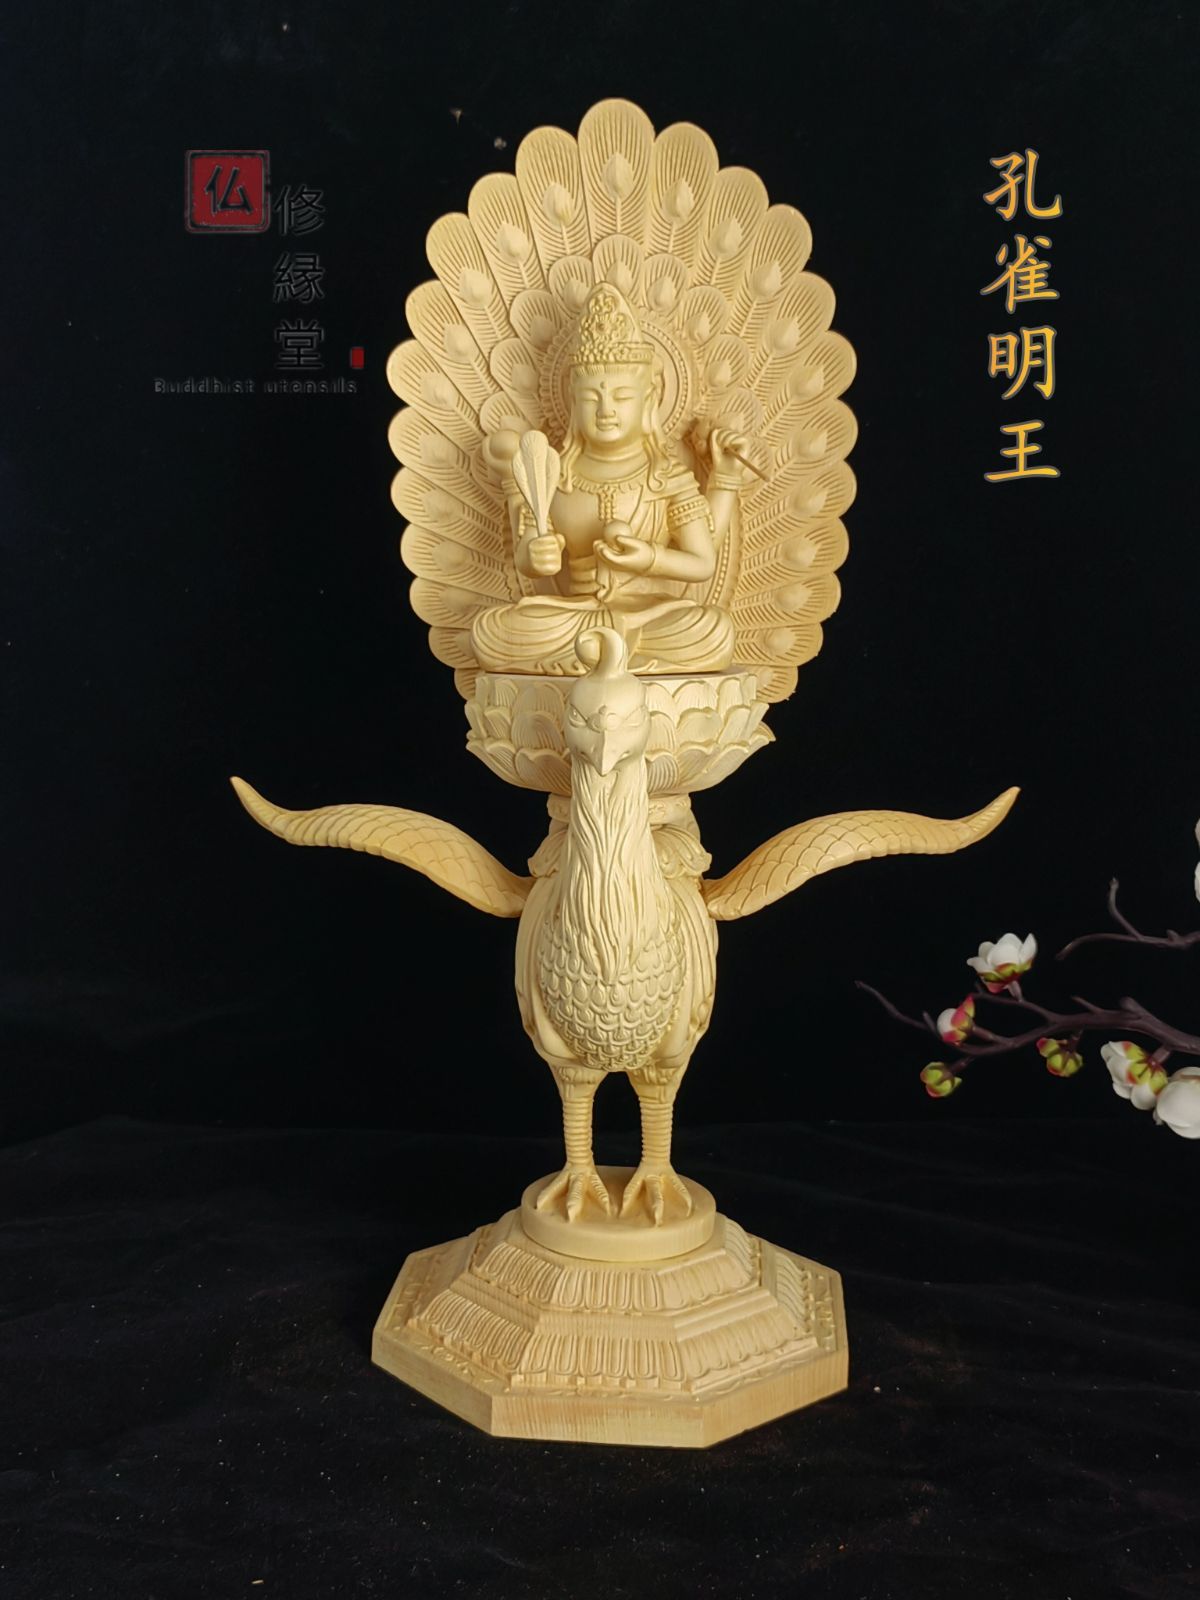 木彫り 仏像 不動明王座像 彫刻 一刀彫 天然木檜材 仏教工芸品